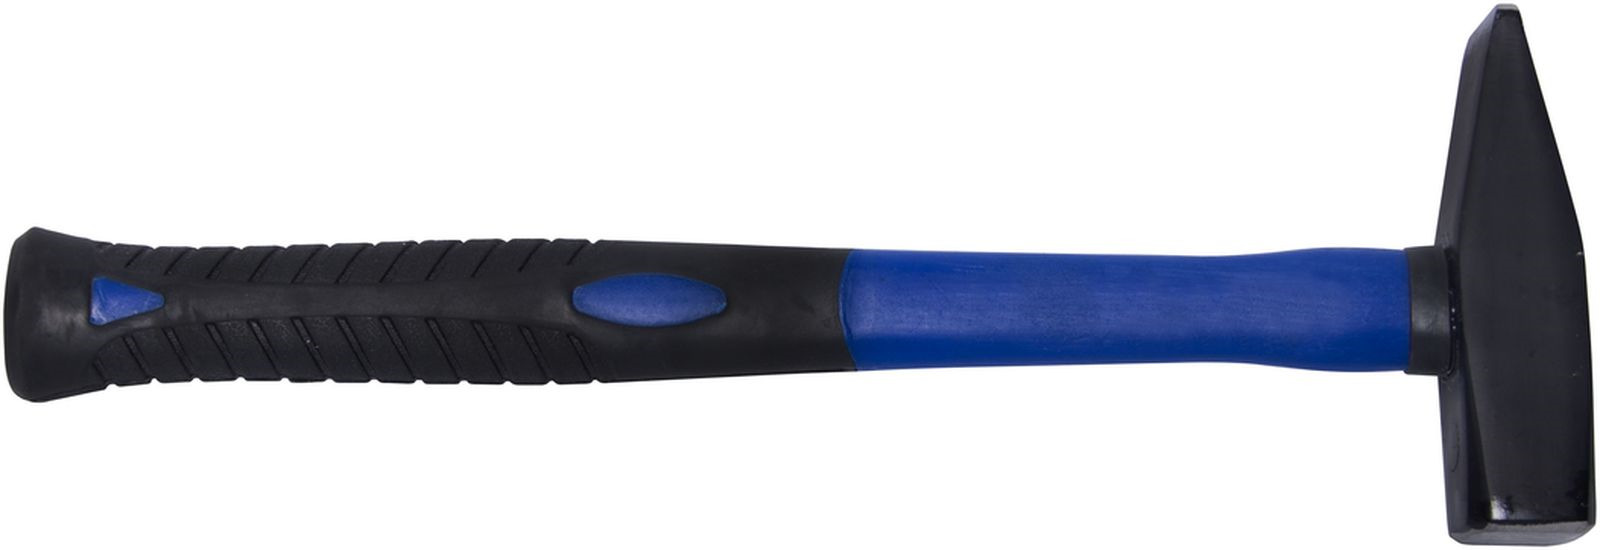 фото Молоток кованый Toolberg, фибергласовая ручка, 600 г